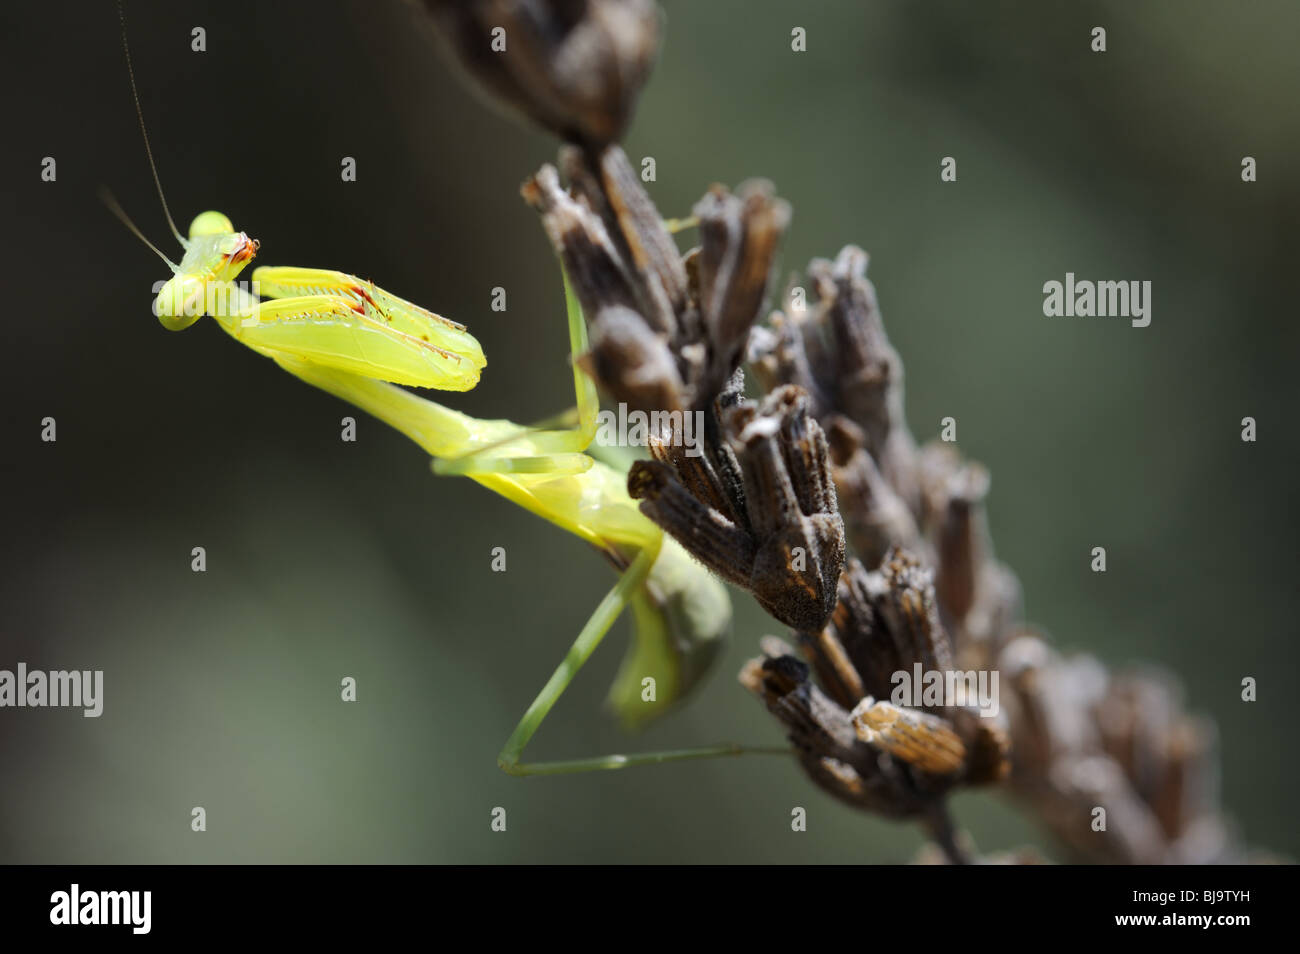 Praying Mantis on Lavendar Stock Photo